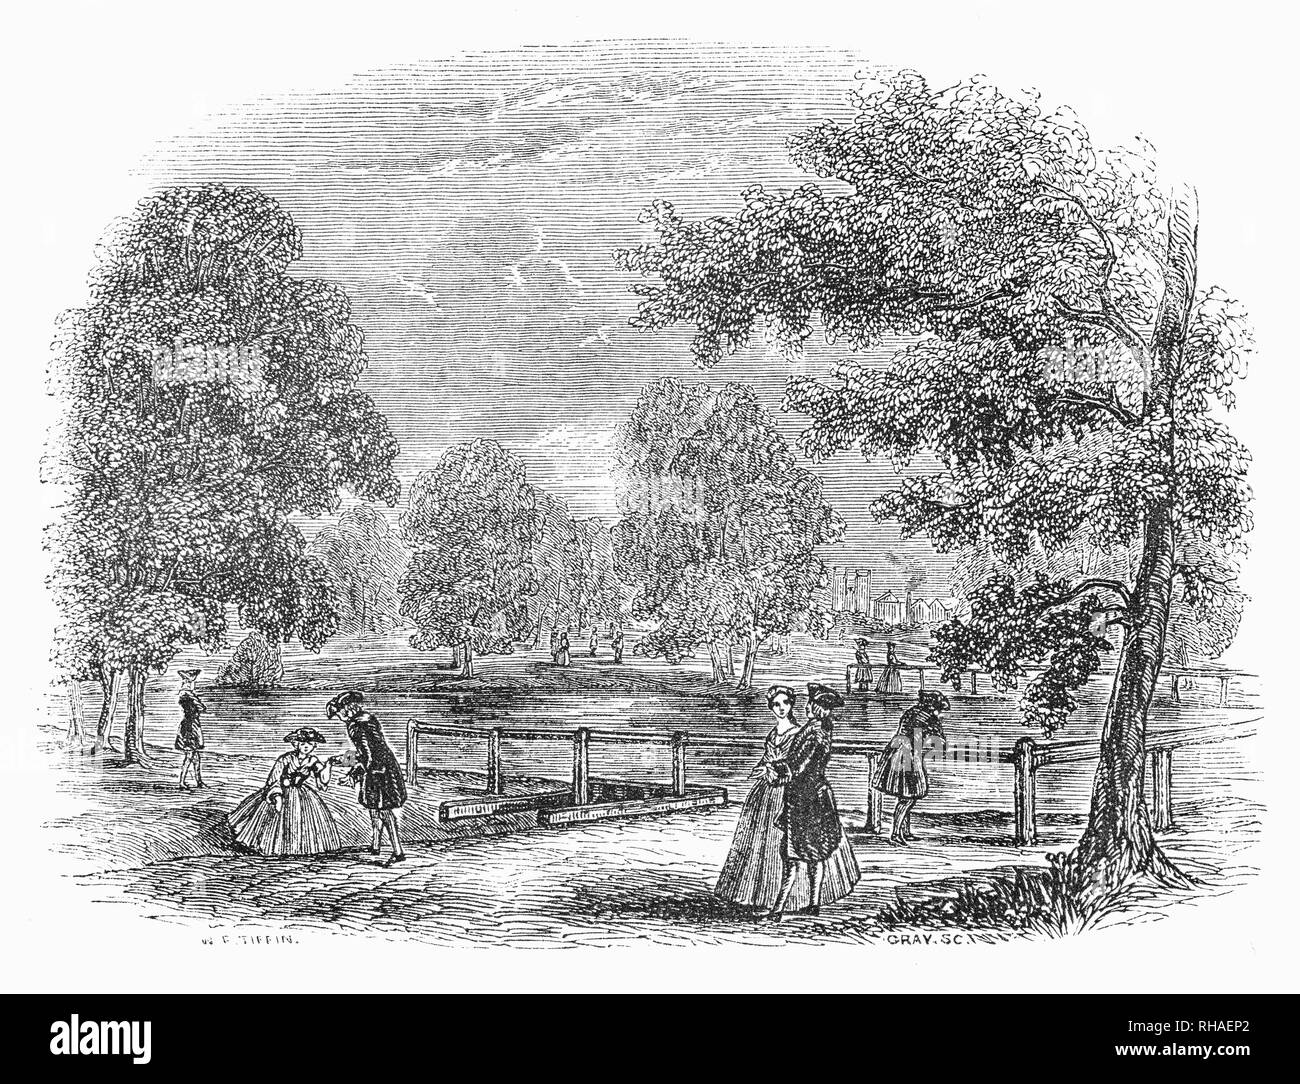 Besucher promenierenden um Rosamonds Teich in St. James Park, London, England, der älteste Königliche Park in London. Es war Charles II., der bestellt den Park mit Alleen der Bäume neu entworfen werden gepflanzt und Rasen gelegt. Der König eröffnete der Park für die Öffentlichkeit und war ein häufiger Besucher, das Füttern der Enten und vermischen sich mit seinen Untertanen. Während die Hannoveraner Zeit, den Park für immer geändert, als John Nash in einem romantischen Stil neu gestaltet, wenn der Kanal in einem natürlichen See umgewandelt wurde. Stockfoto